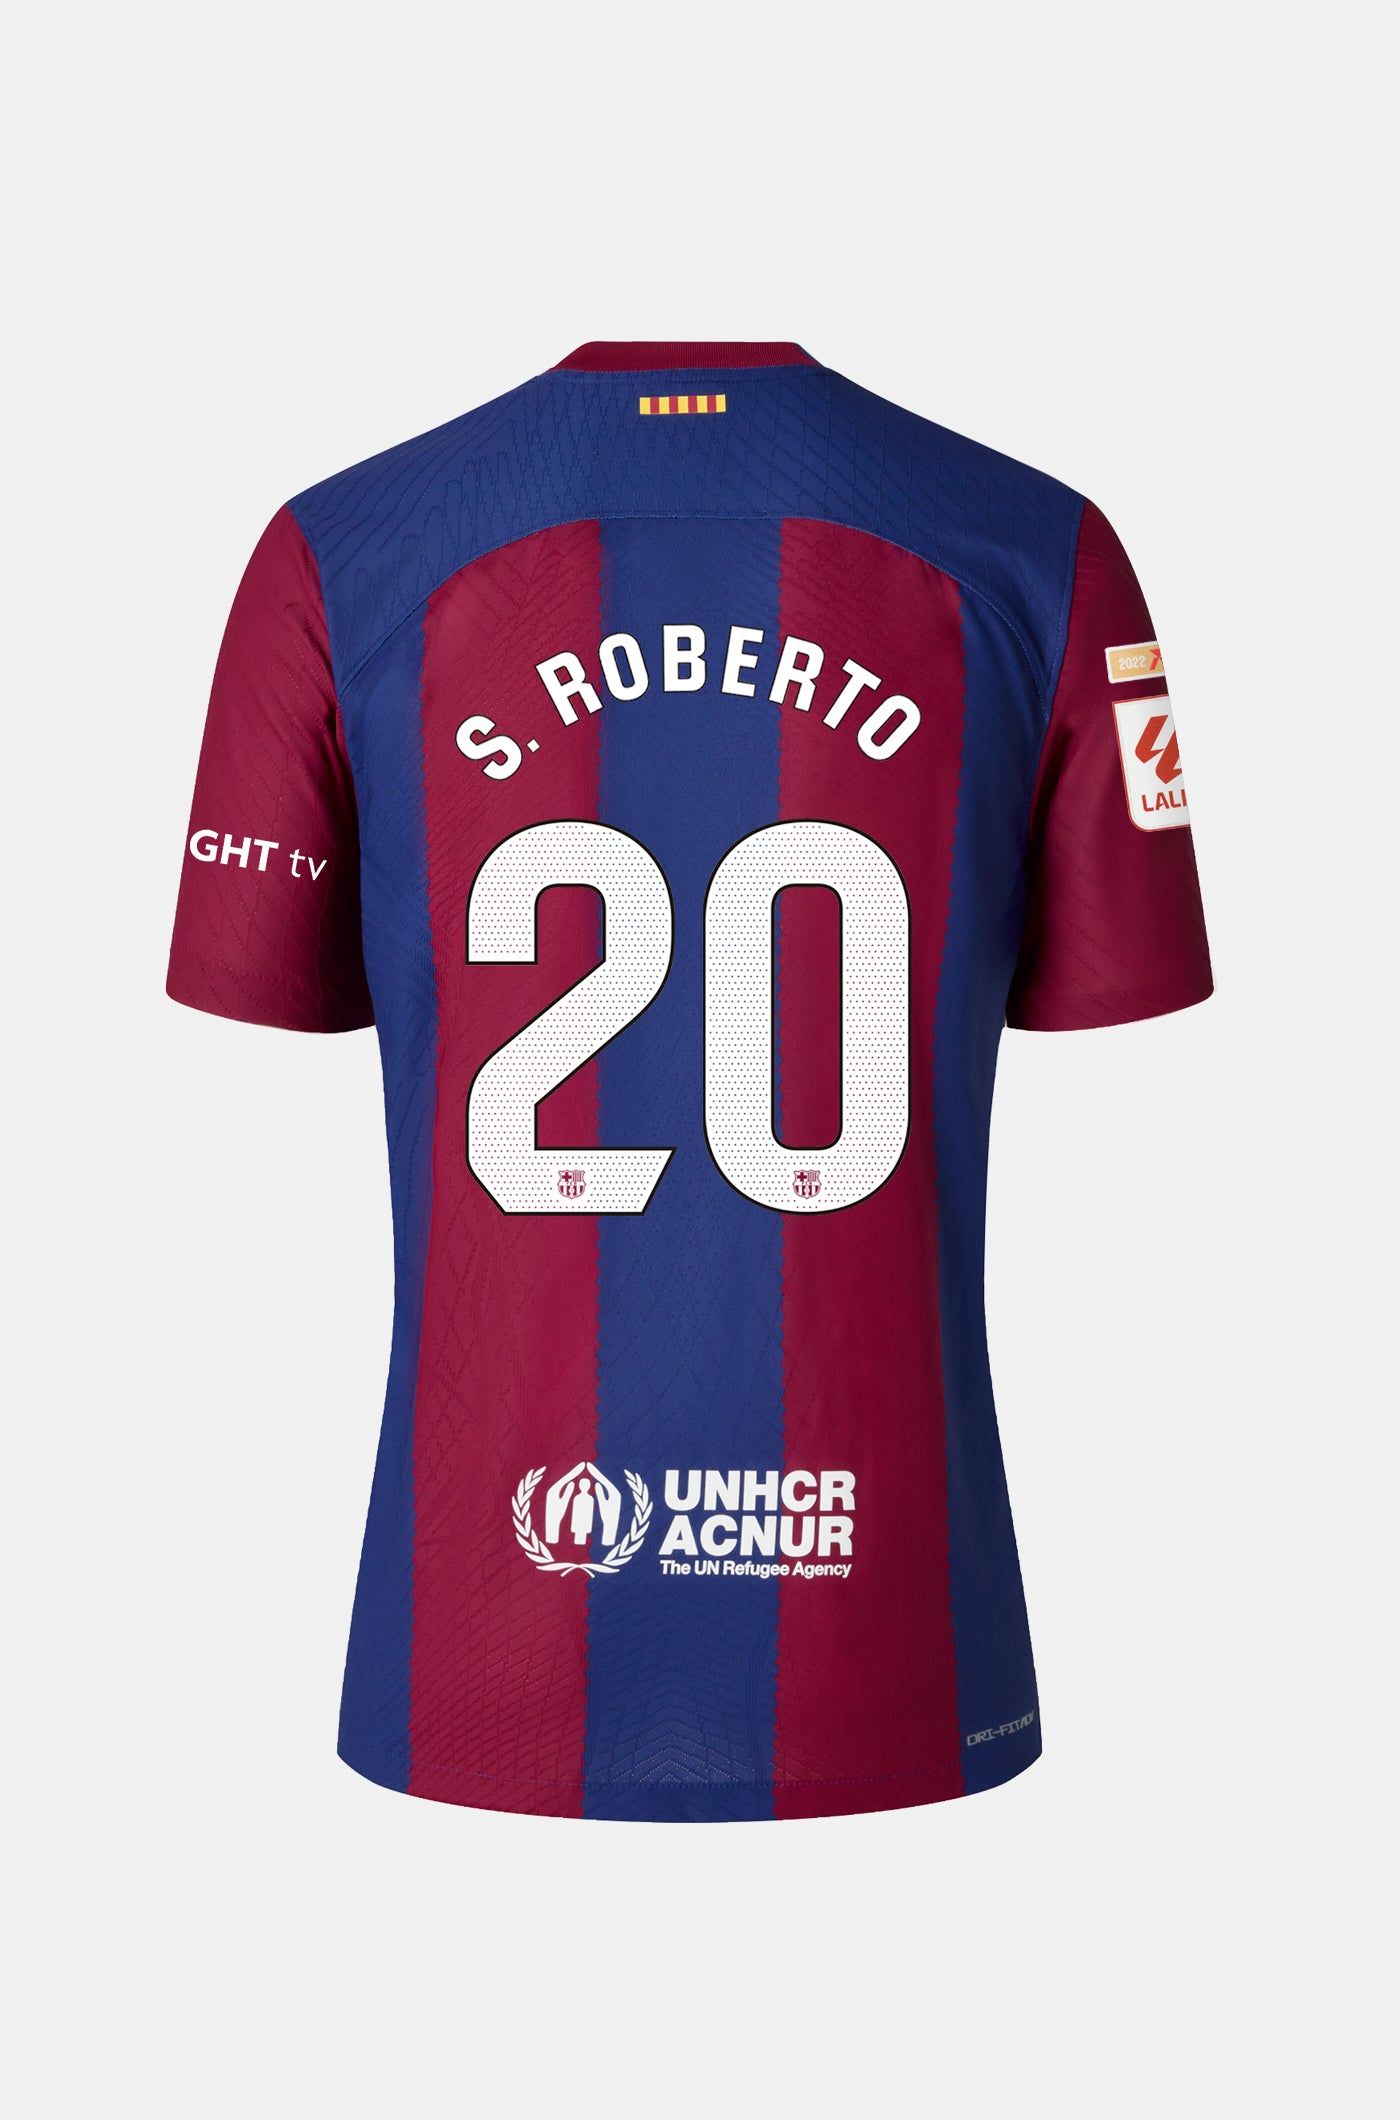 LFP FC Barcelona home shirt 23/24 Player's Edition - S. ROBERTO